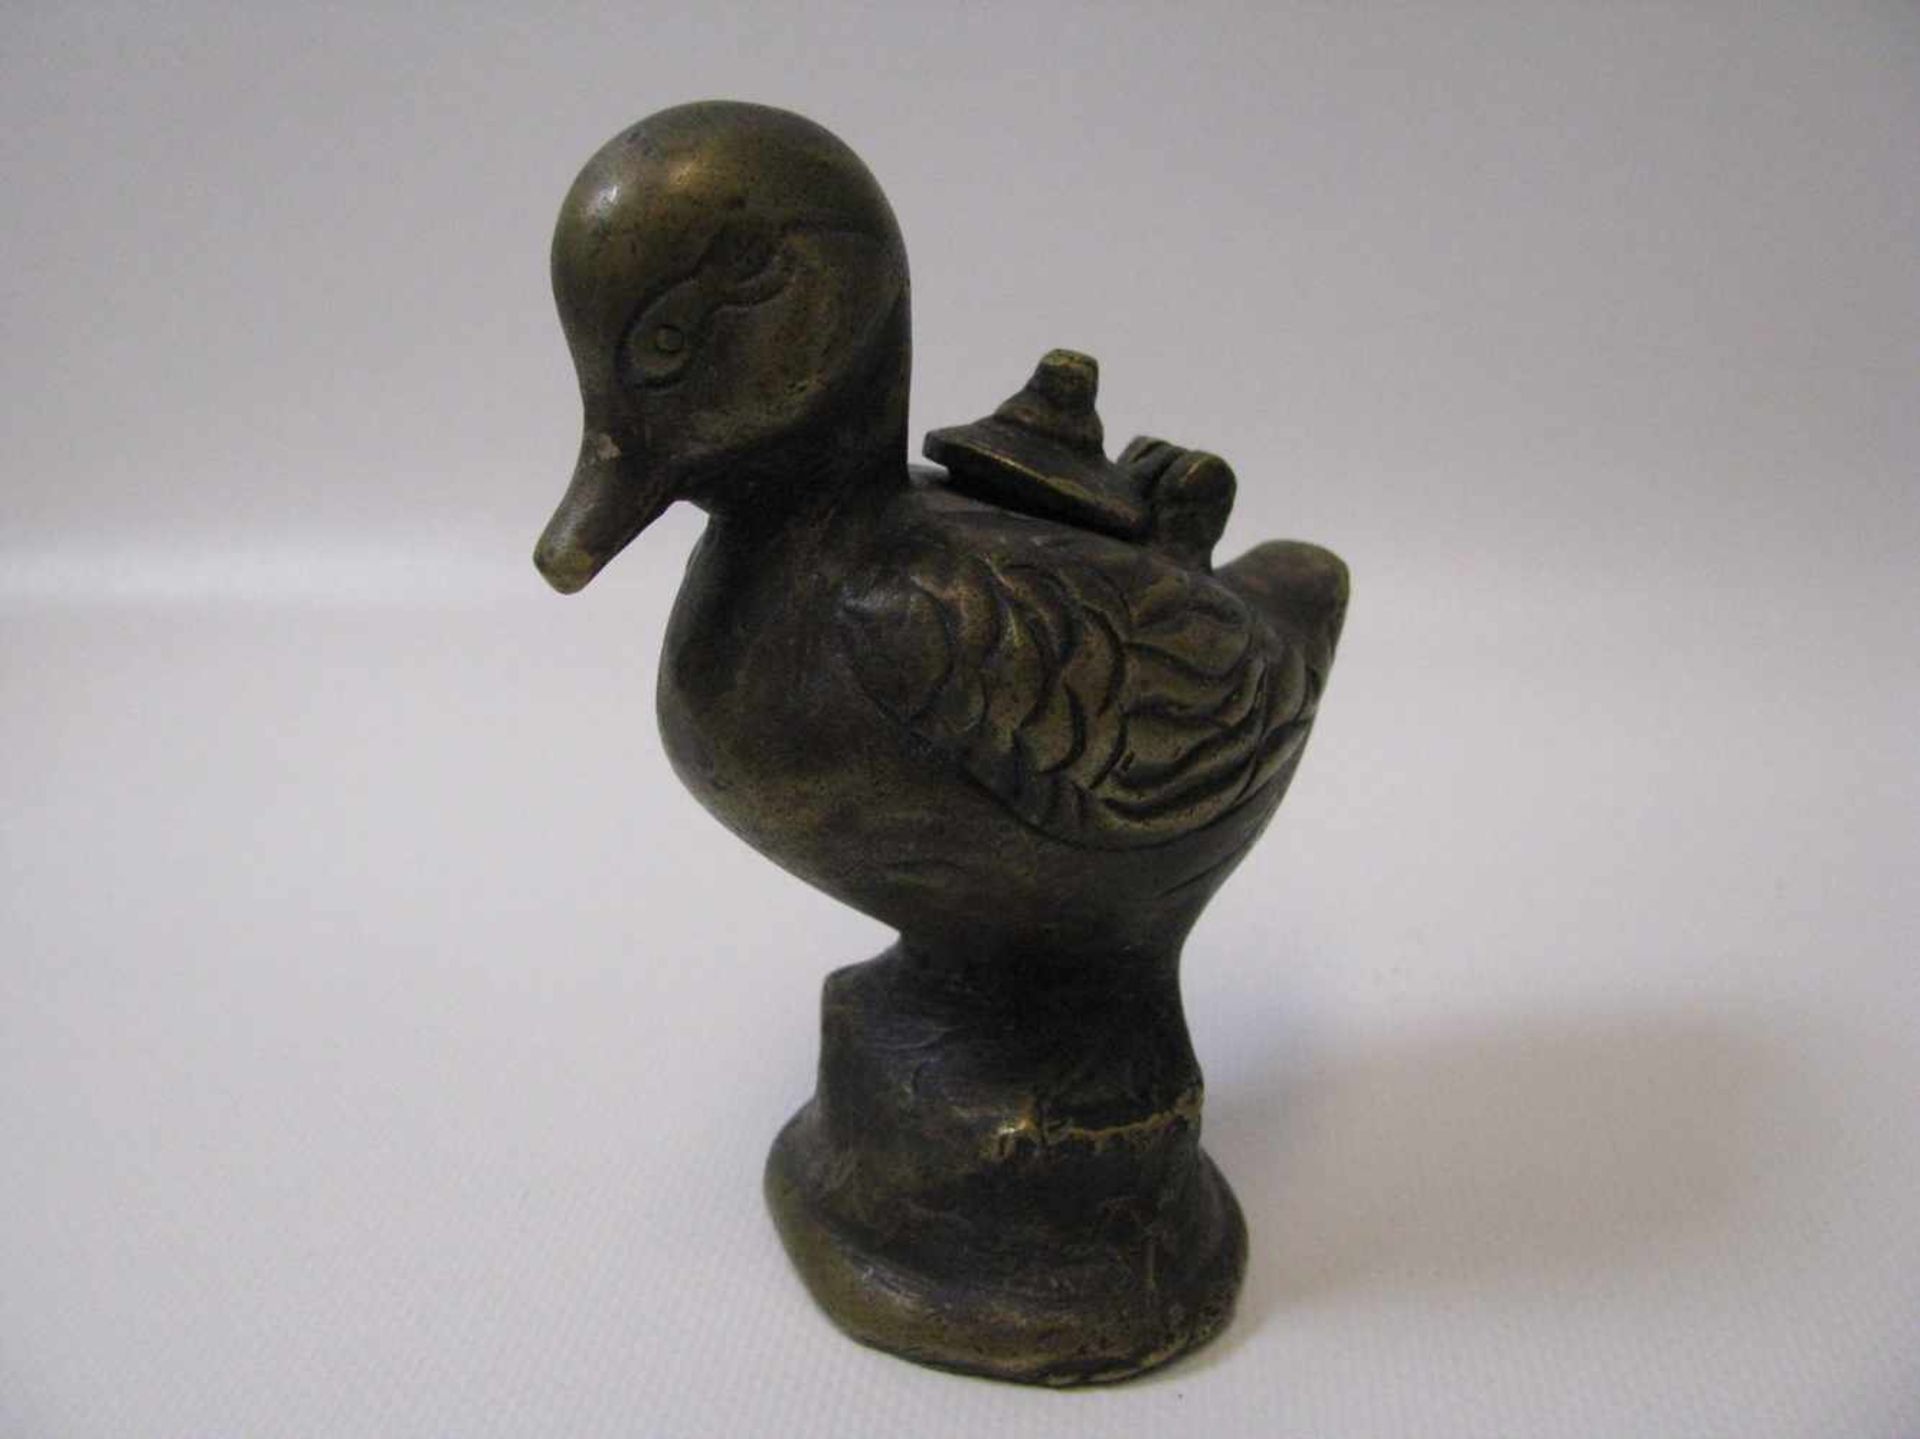 Weihrauchgefäß in Form einer Ente, Tibet/Nepal, Bronze, 12 x 9,5 x 5,5 cm.- - -19.00 % buyer's